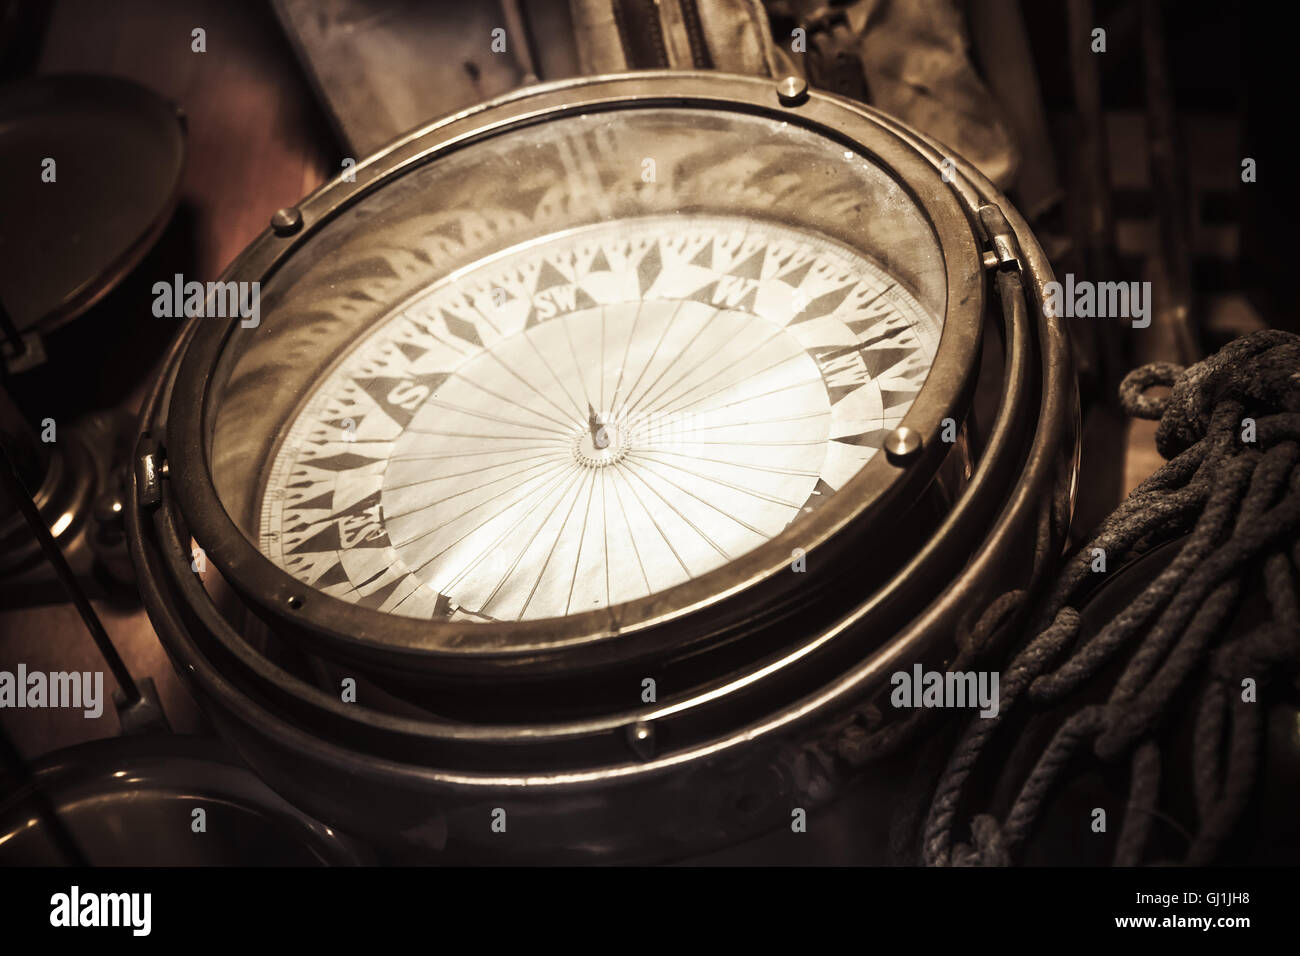 Compas nautique vintage, photo gros plan avec focus sélectif et chaude de correction tonale rétro effet filtre photo Banque D'Images